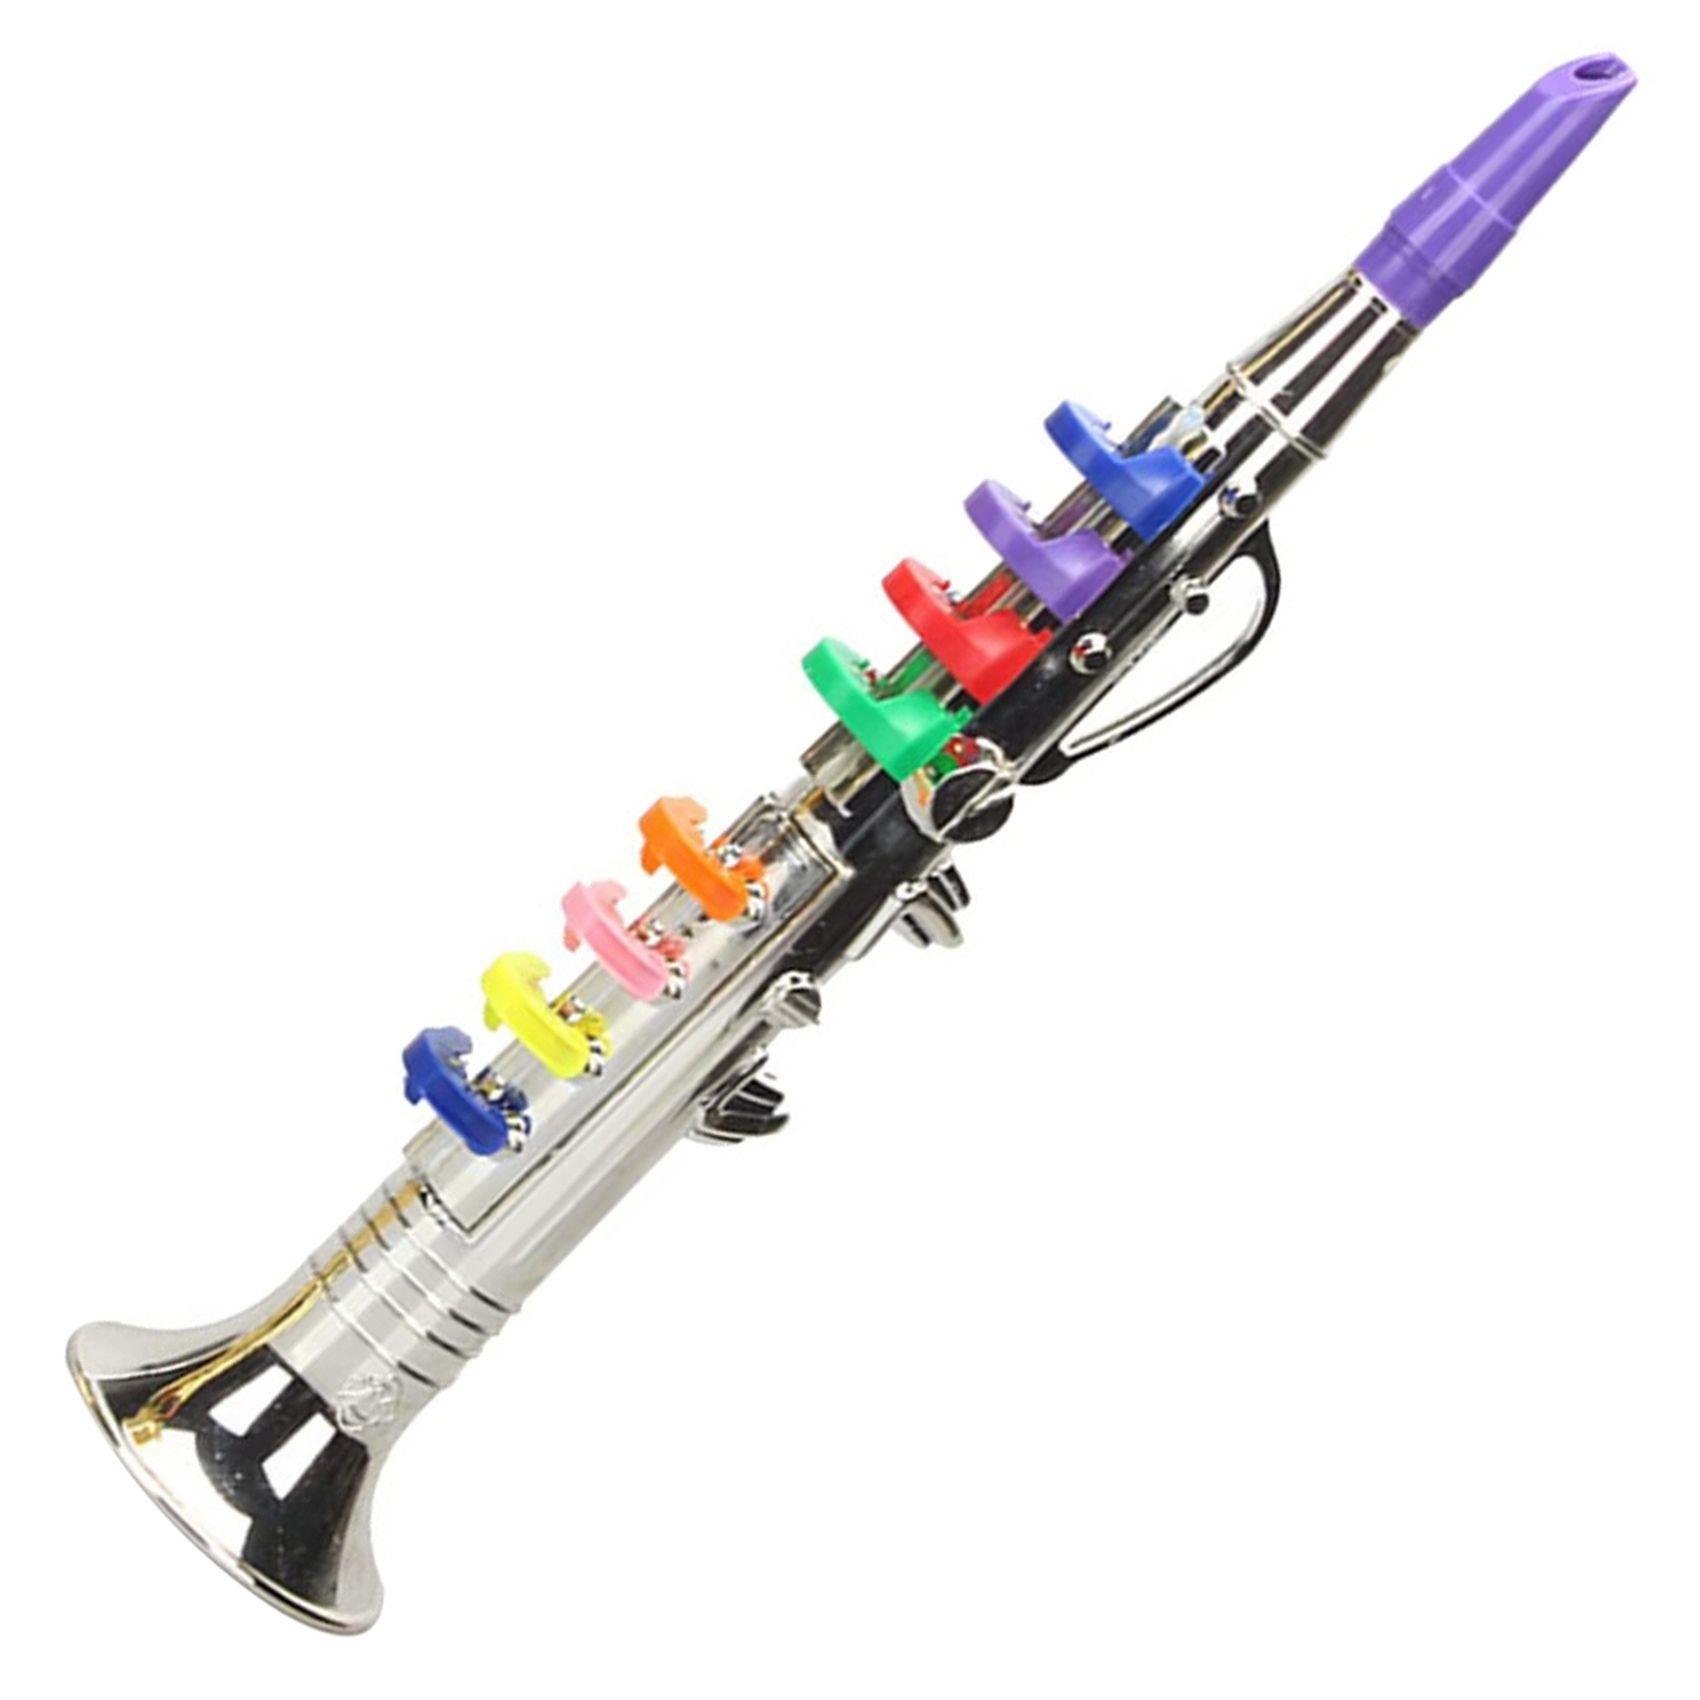 MILISTEN Saxophone avec 8 touches colorées - Instruments à vent pour  enfants - Jouet éducatif précoce pour garçons et filles (doré